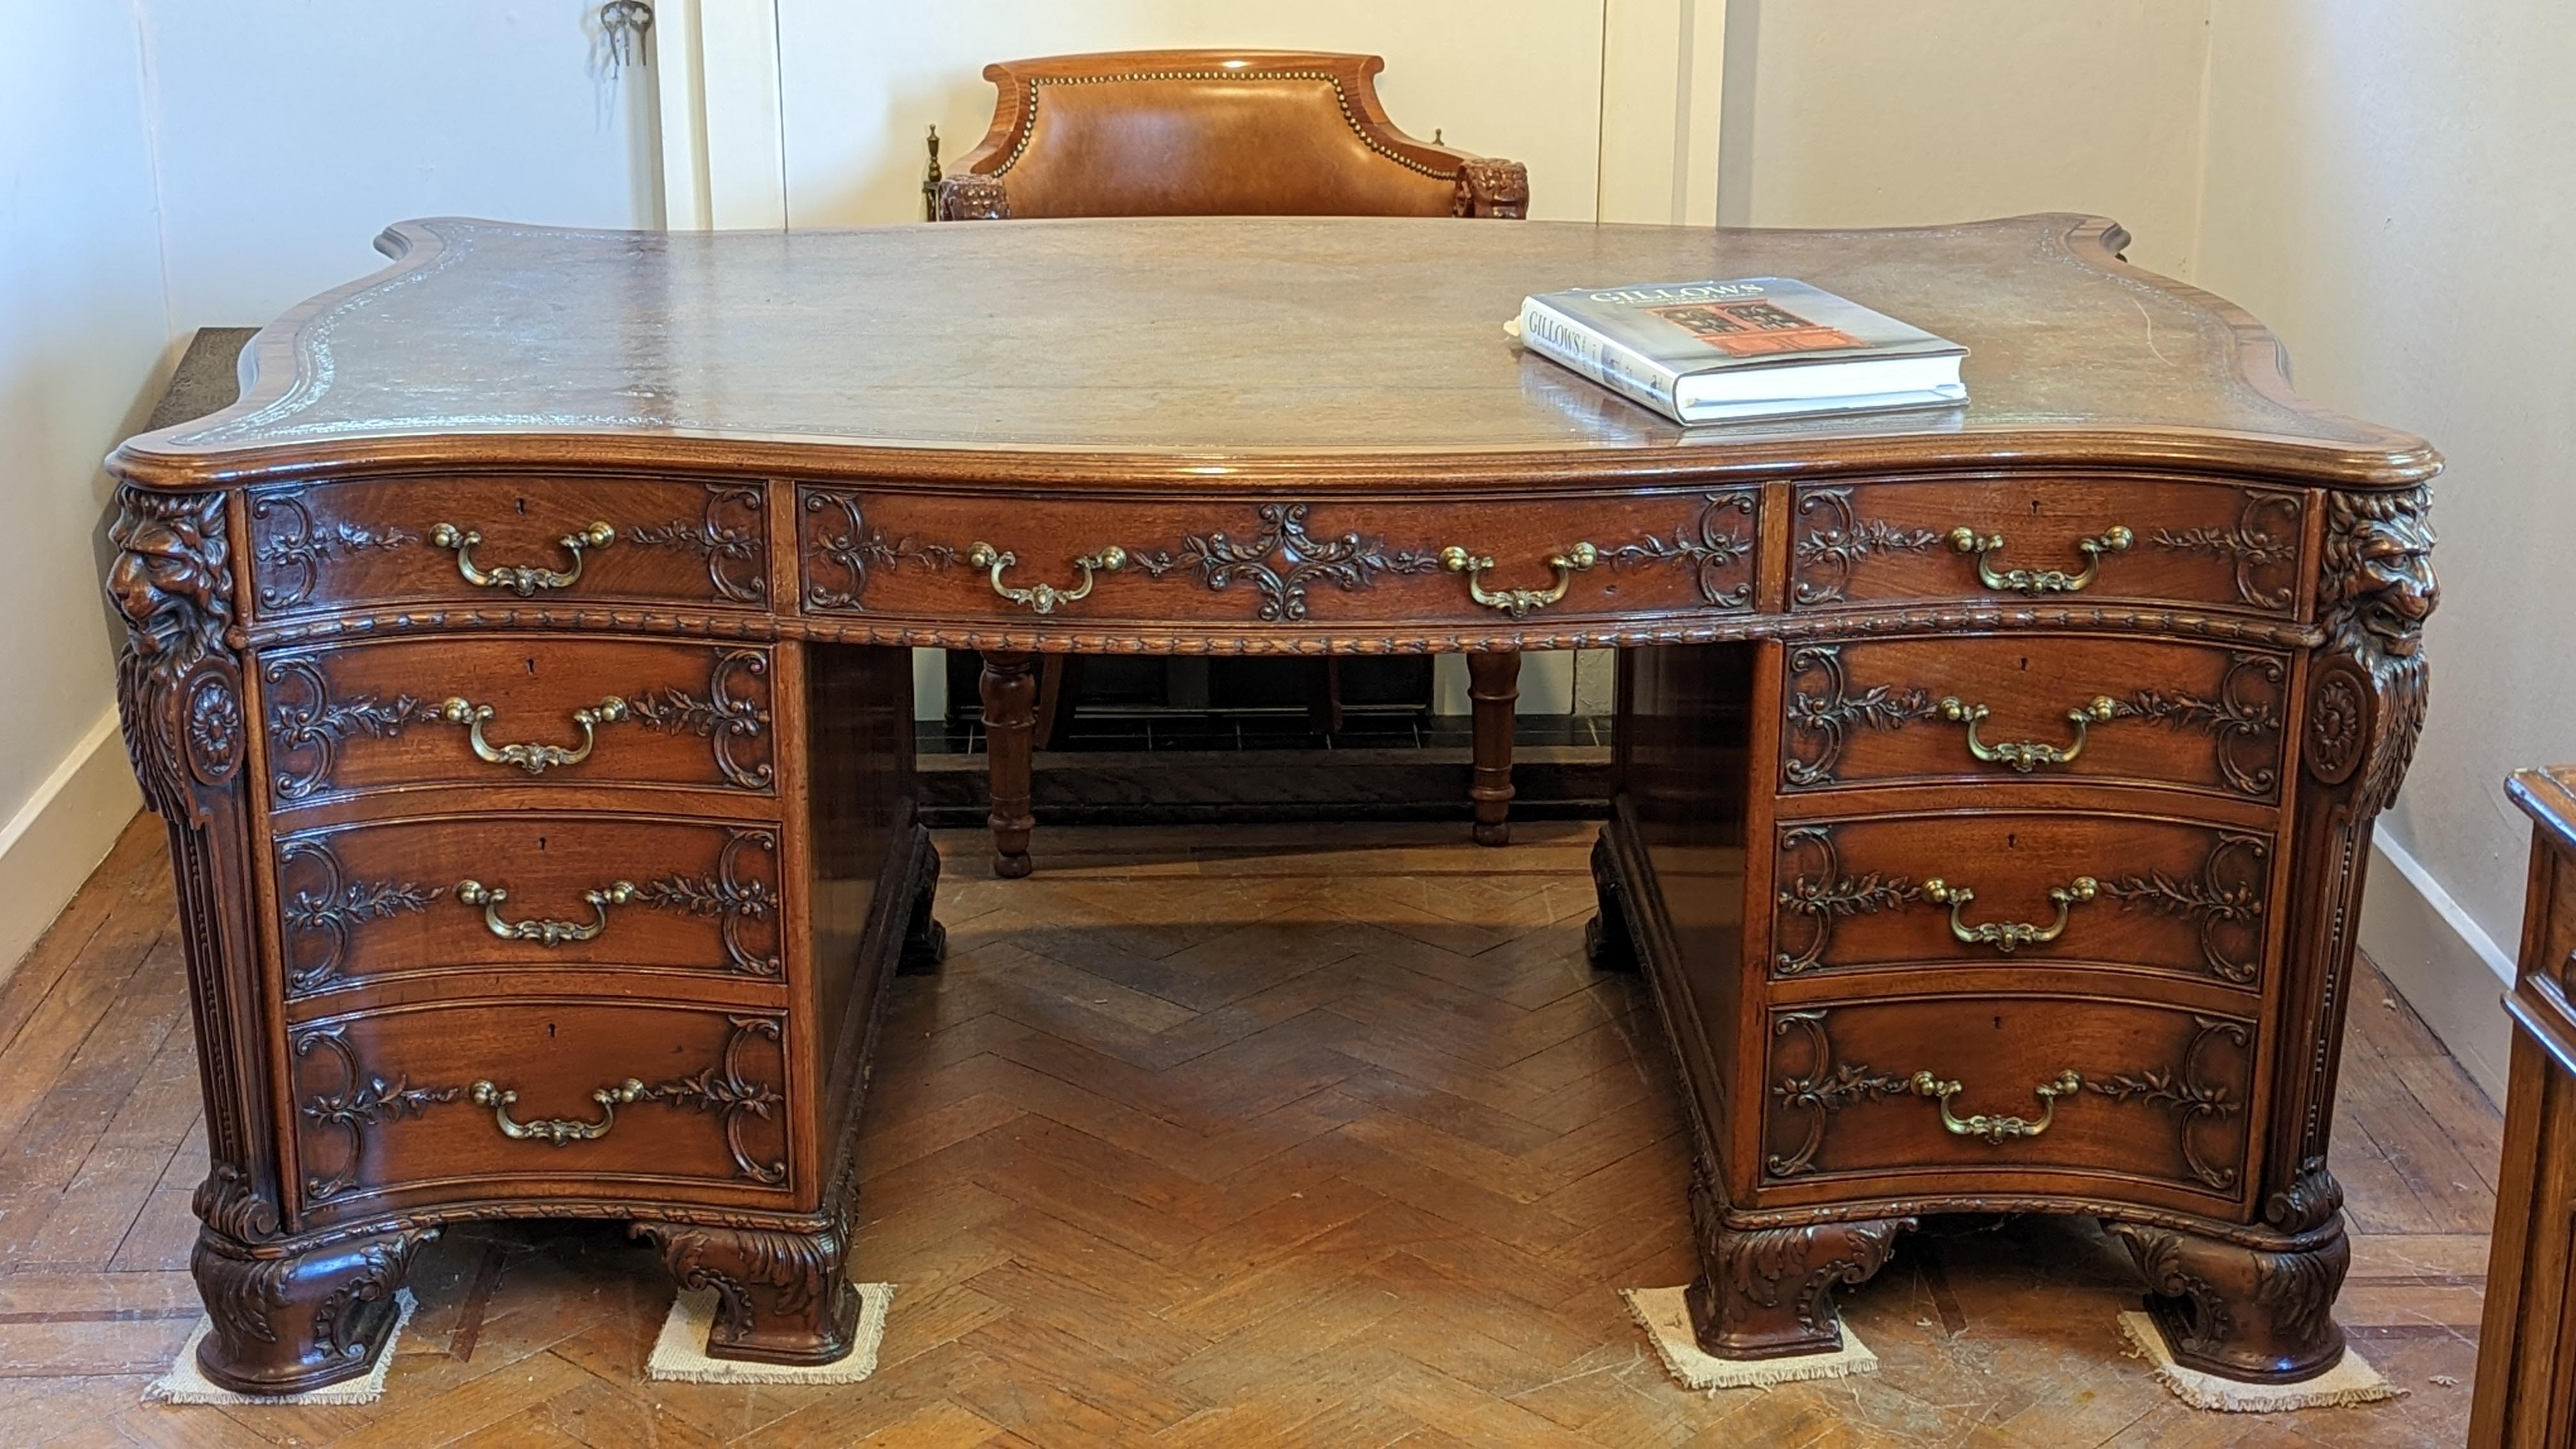 Dieser prächtig geformte Sockelpartner-Schreibtisch stammt aus der viktorianischen Zeit um 1870. Er wurde in der berühmten Gillows-Werkstatt in Cumbria hergestellt, und die Schubladen und einige der Schlösser sind mit Gillows oder Gillows Lancaster